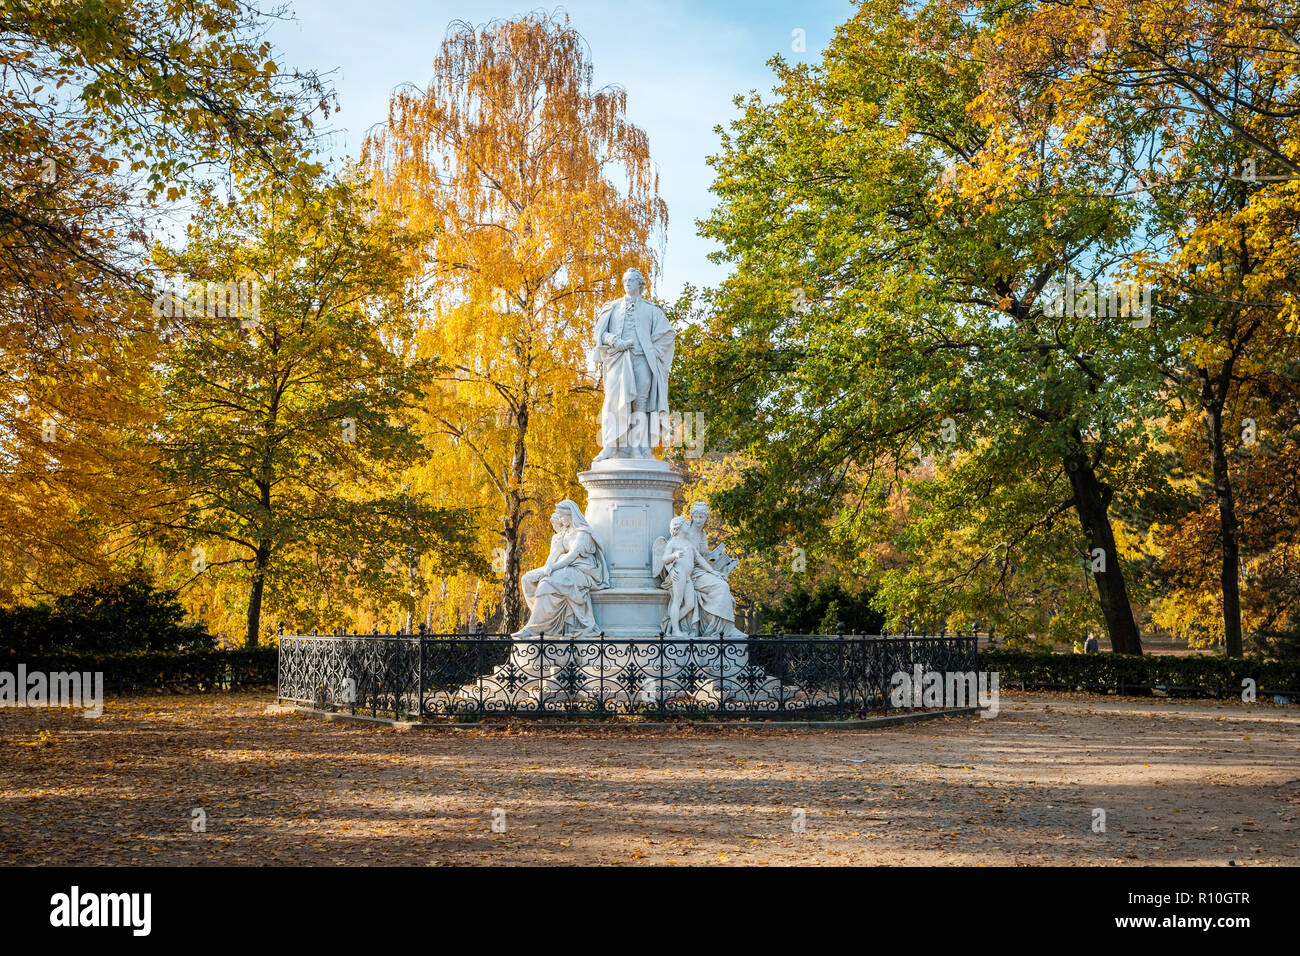 Berlino, Germania - Novembre 2018: la statua del famoso poeta Johann Wolfgang von Goethe in un parco nei pressi della Porta di Brandeburgo. Berlino, Germania Foto Stock